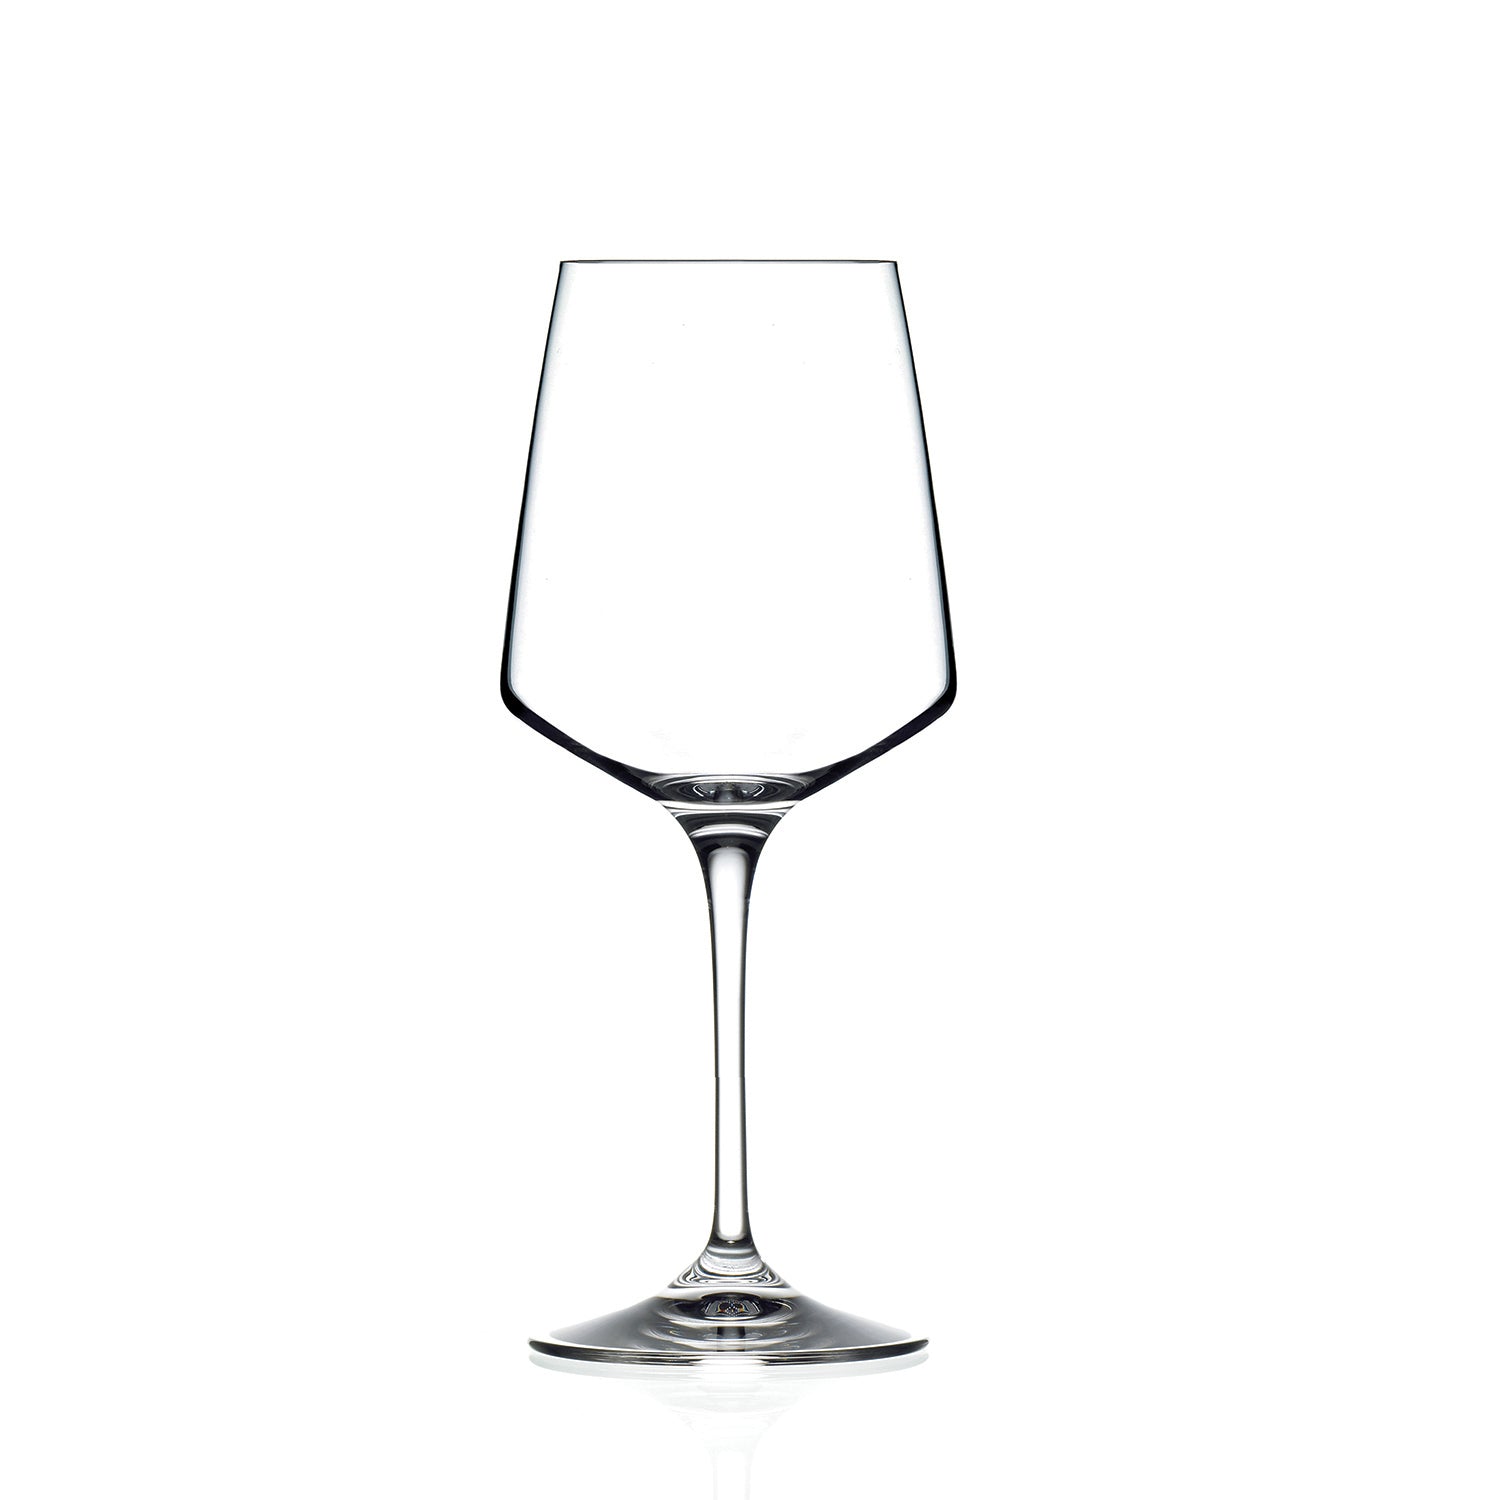 Elia Meridia Burgundy Wine Glasses at drinkstuff